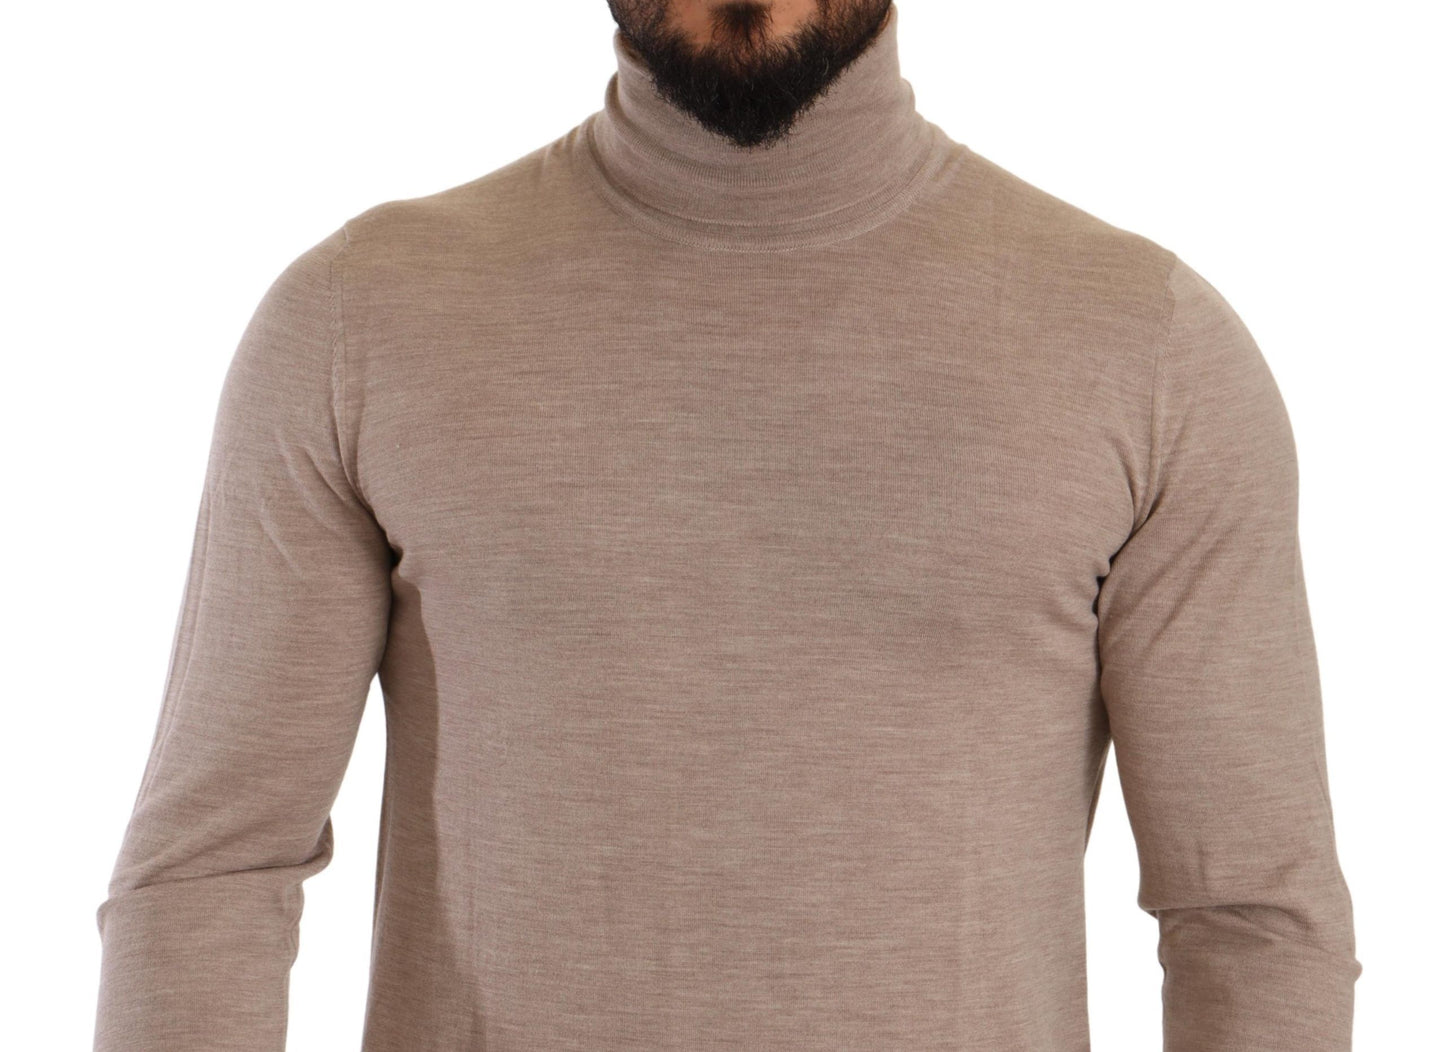 Timeless Beige Wool Turtleneck Sweater